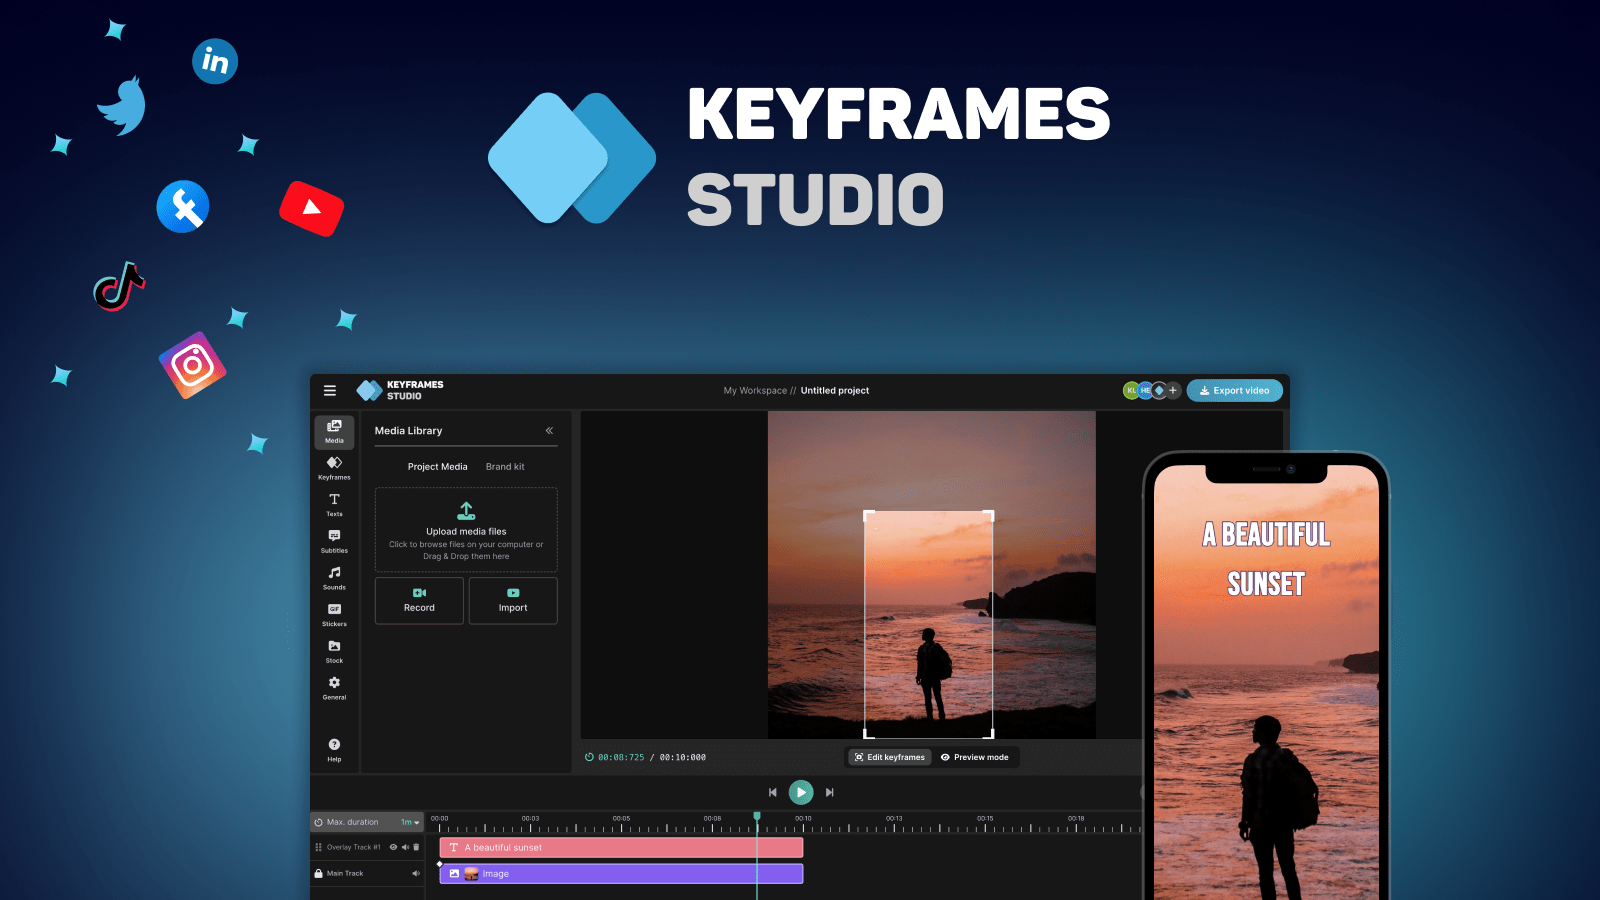 Keyframes.studio: una plataforma de edición de video todo en uno para crear, editar y compartir videos en las redes sociales